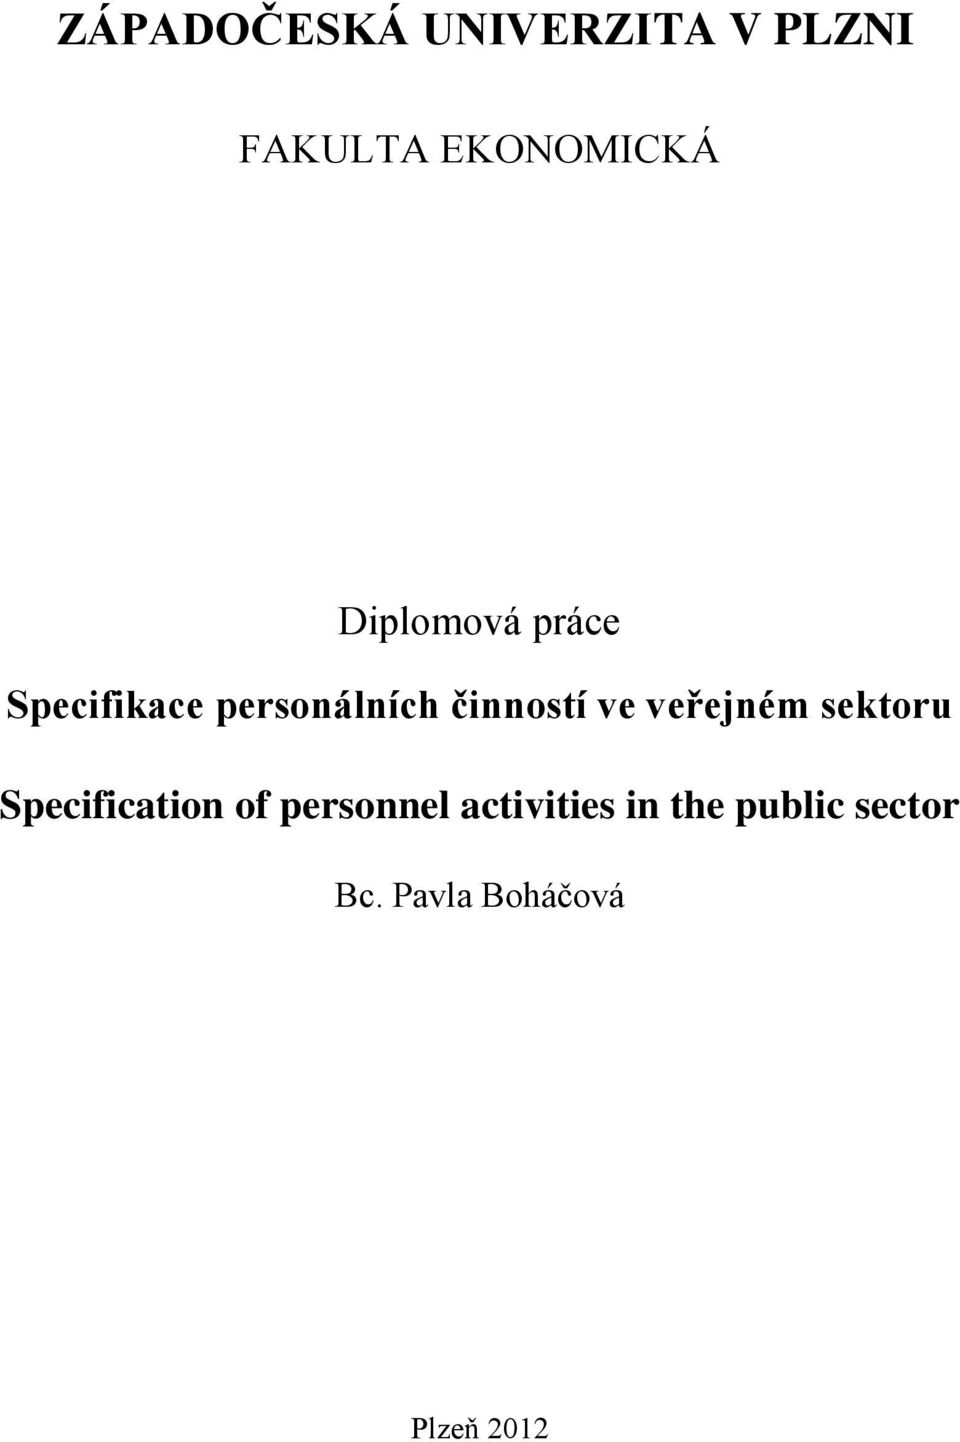 ve veřejném sektoru Specification of personnel